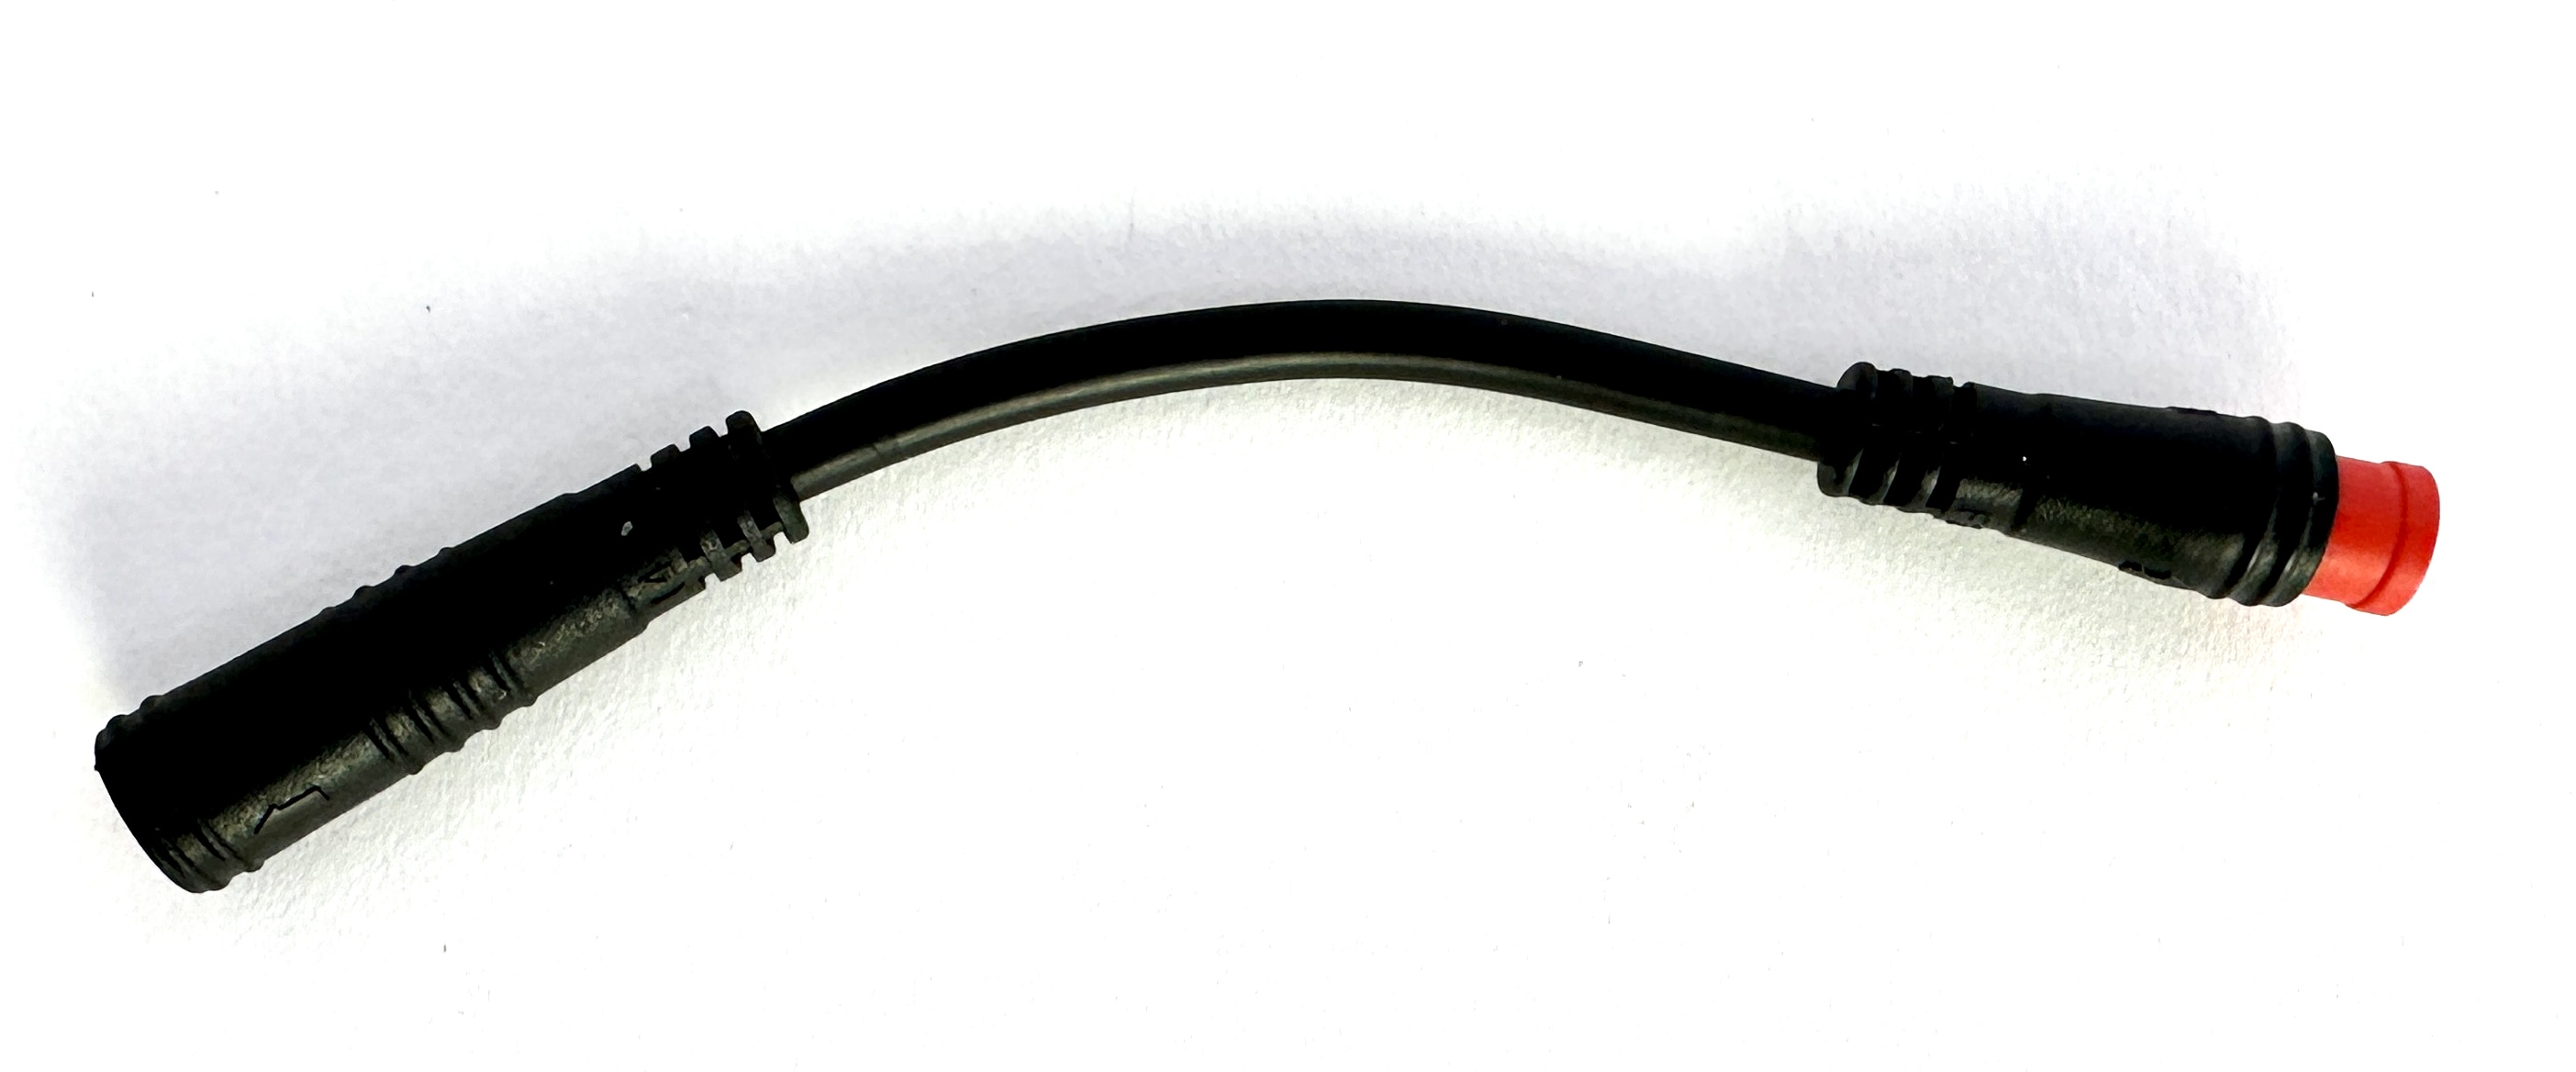 HIGO / Julet Câble d'extension 5,5 cm pour Ebike, 2 PIN femelle à mâle, rouge